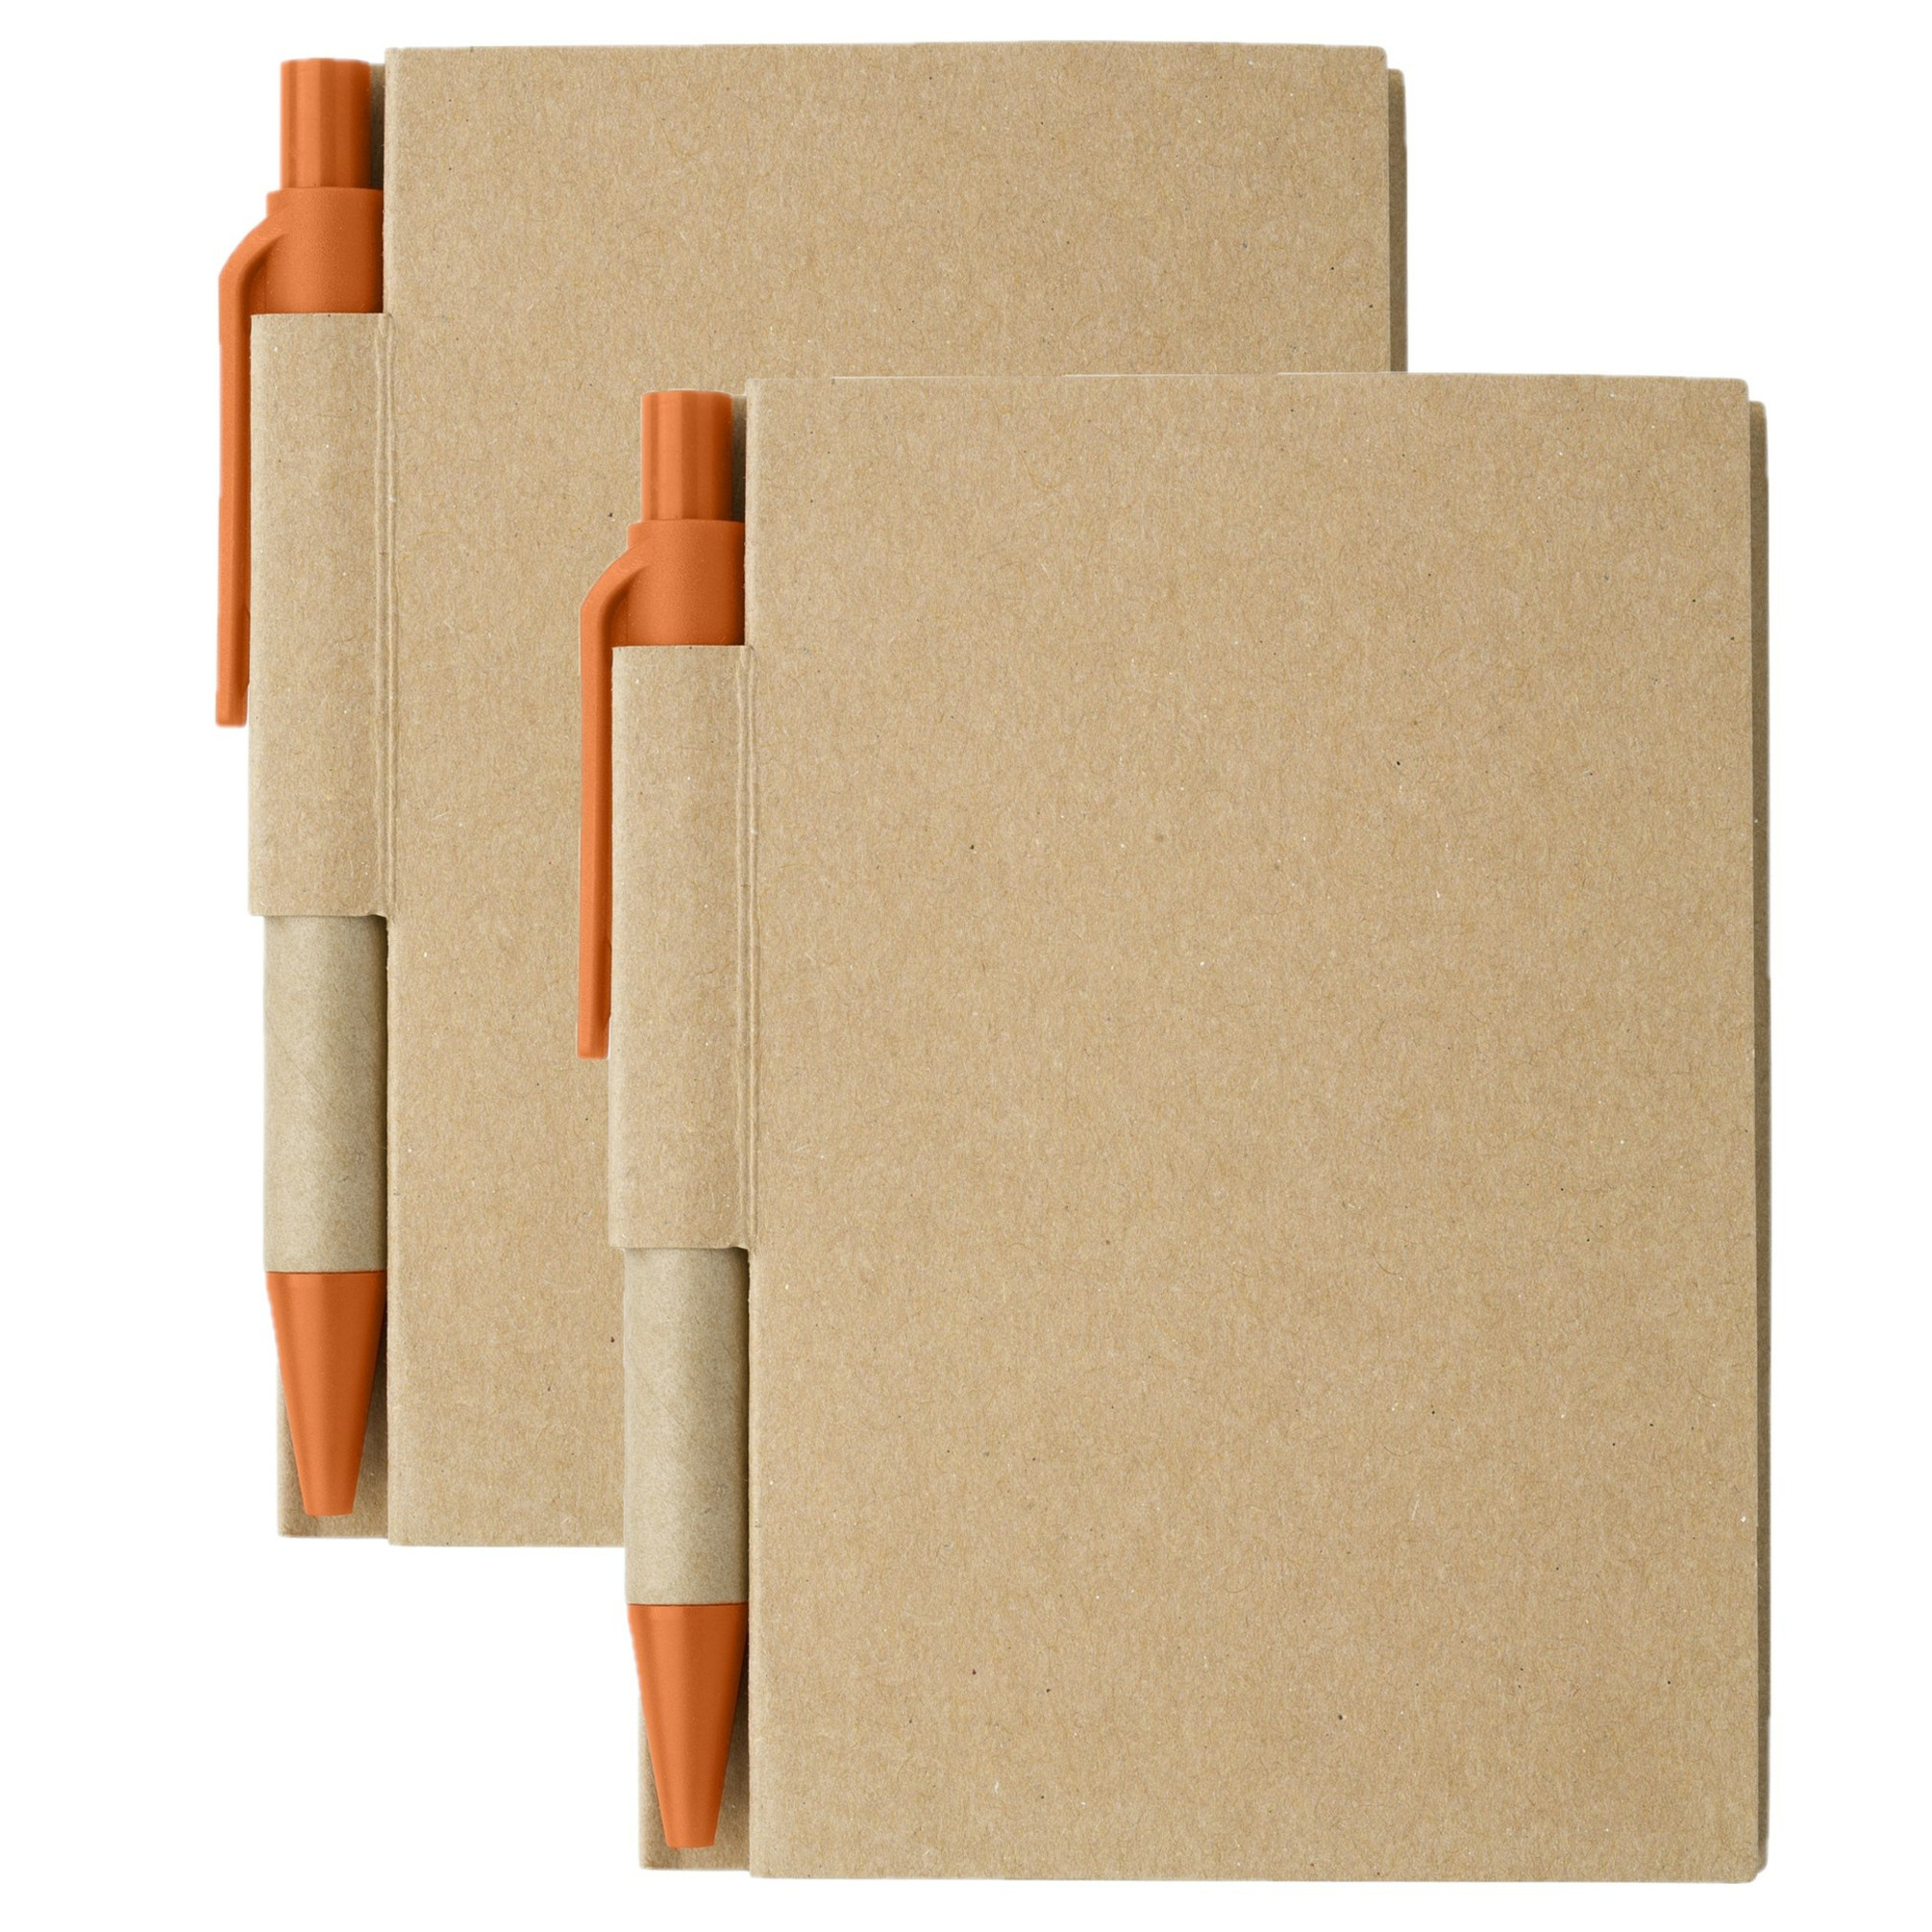 Notitie-opschrijf boekje met balpen harde kaft beige-oranje 2x8cm 80blz gelinieerd